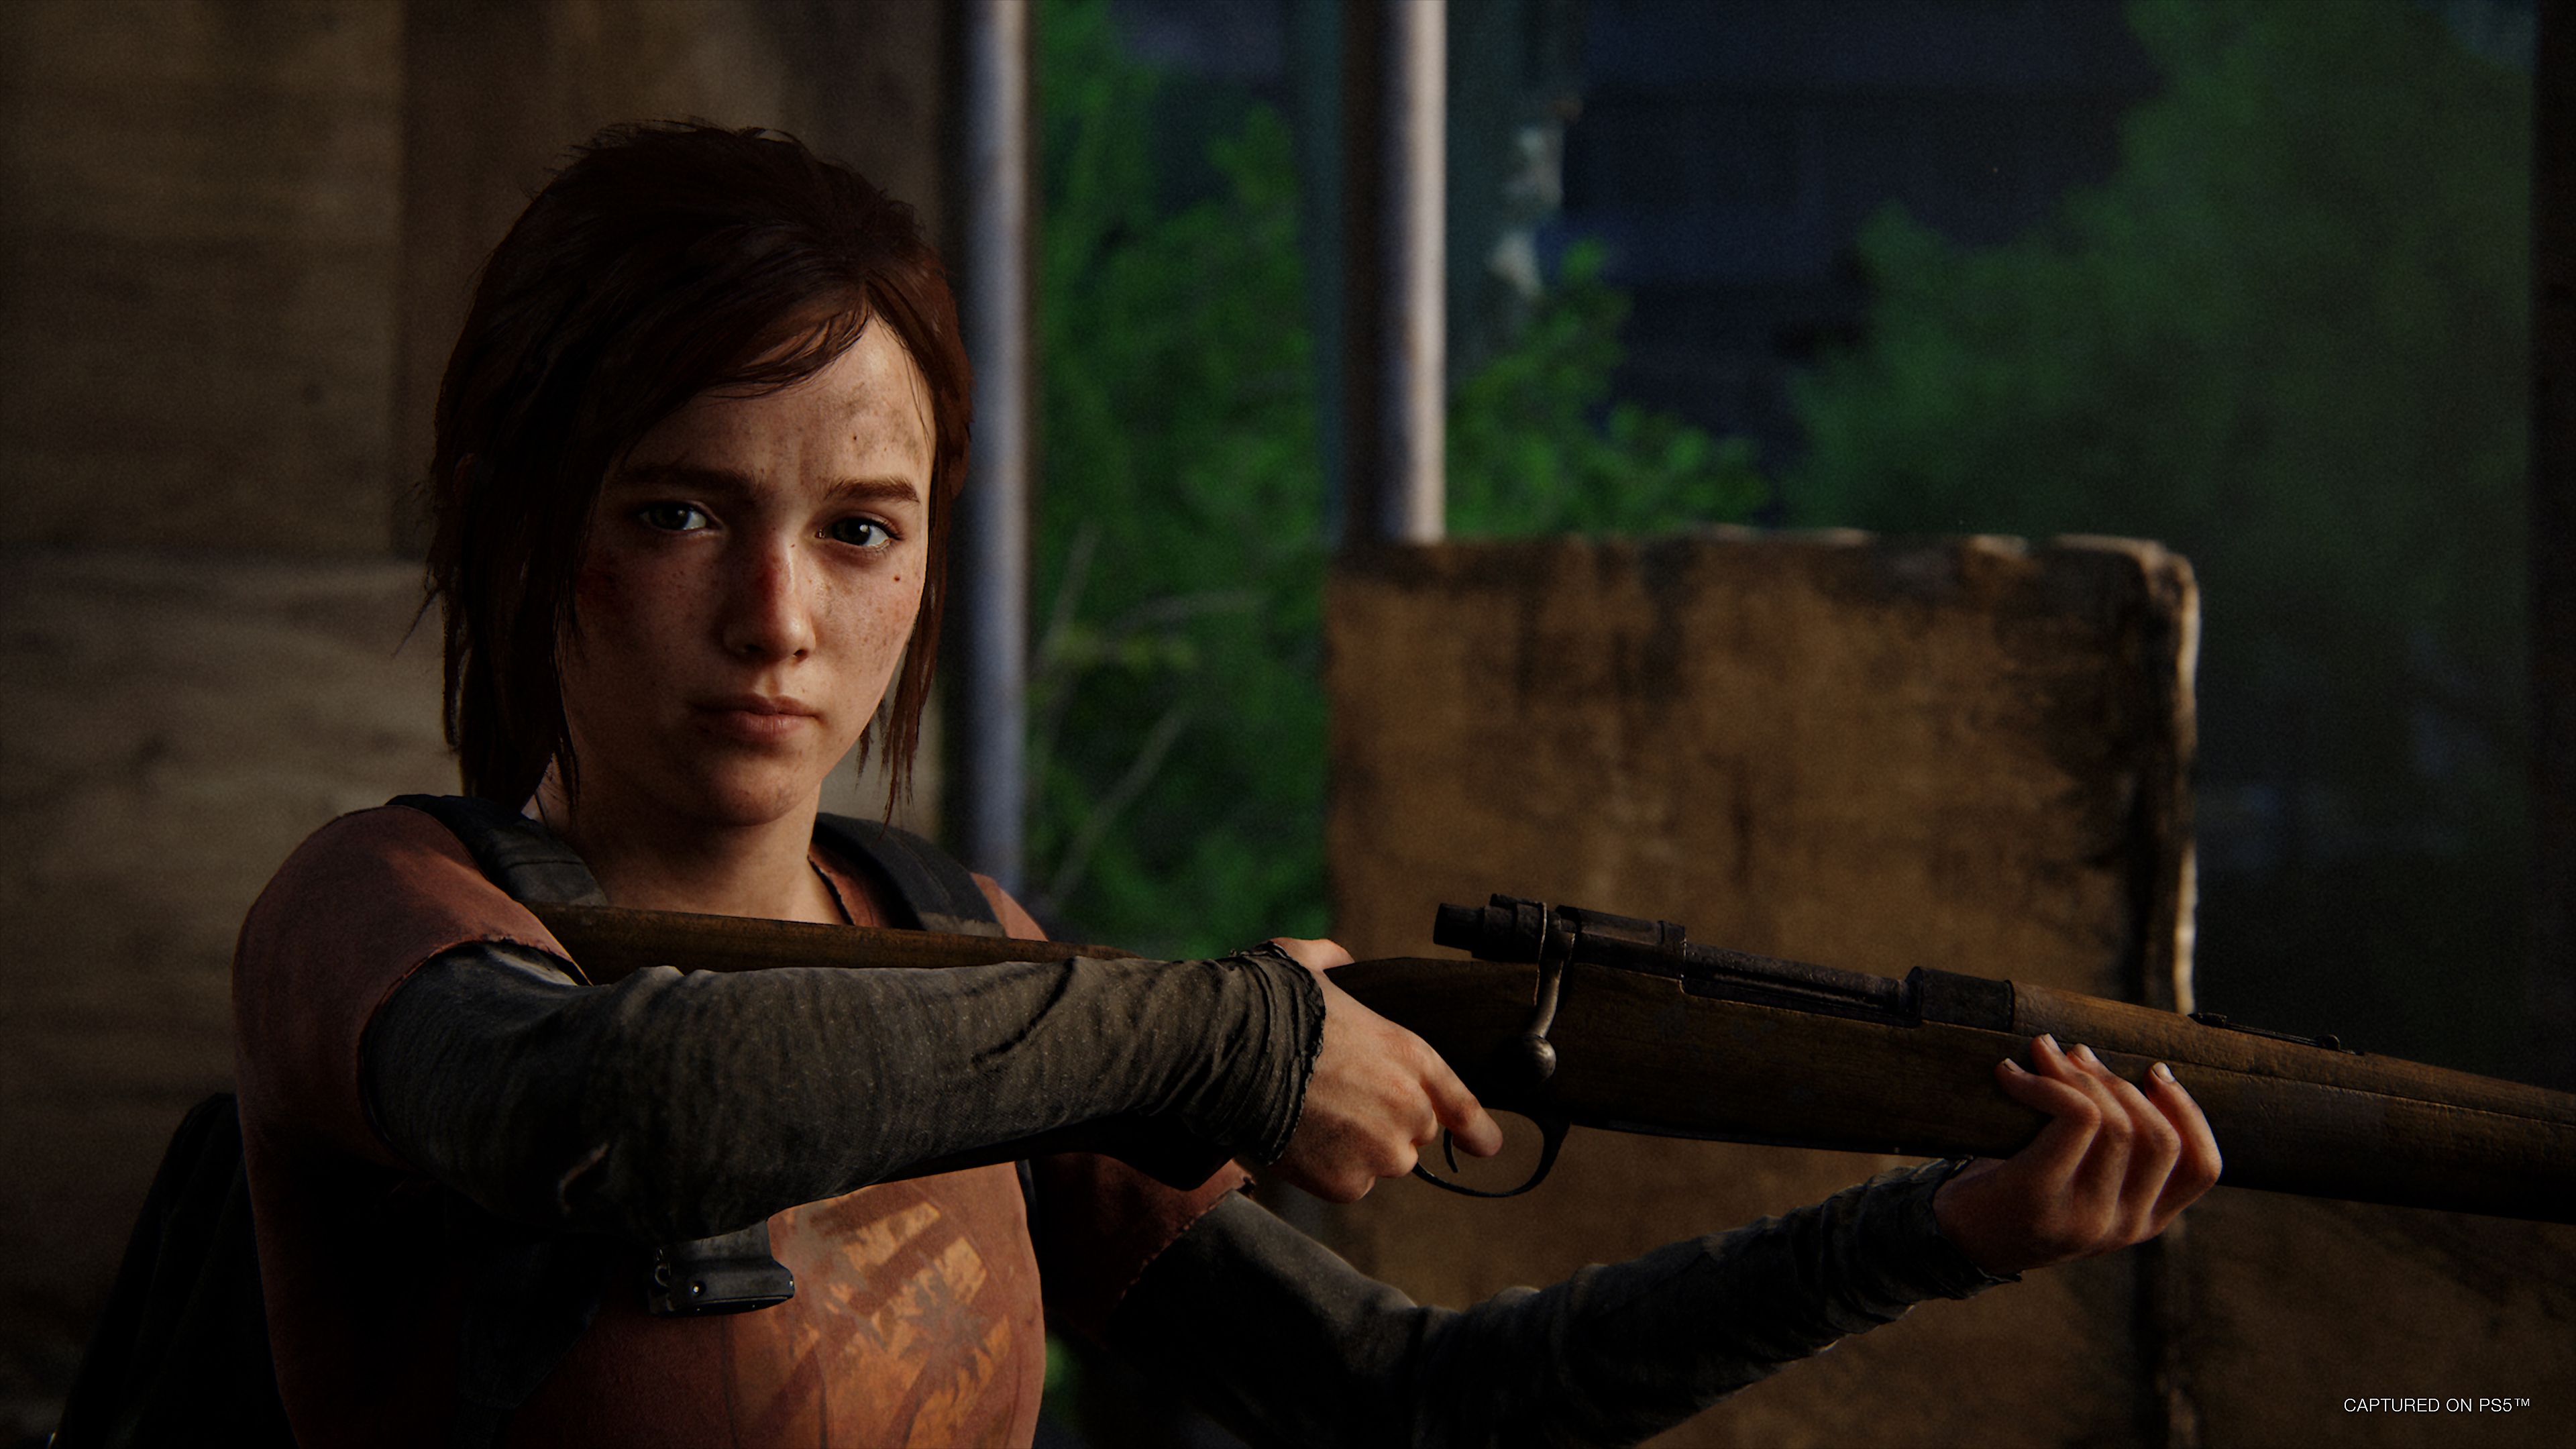 The Last of Us Part 1 pode ter uma nova lista de troféus 2